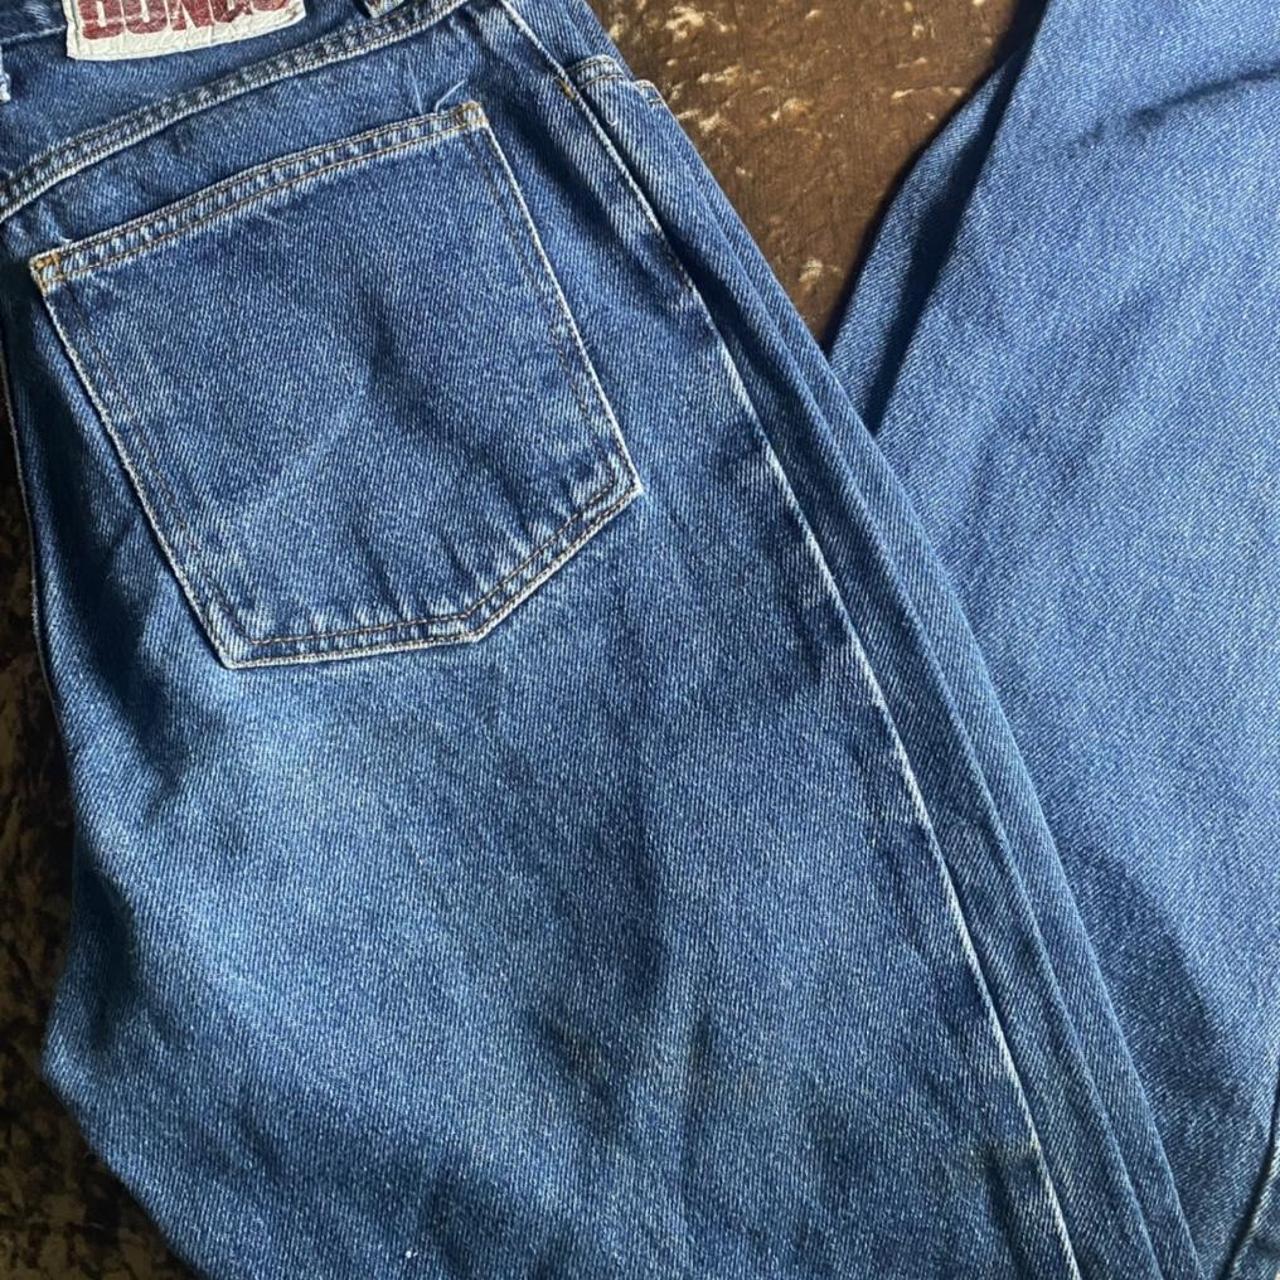 vintage bongo high waisted slim fit jeans Size... - Depop